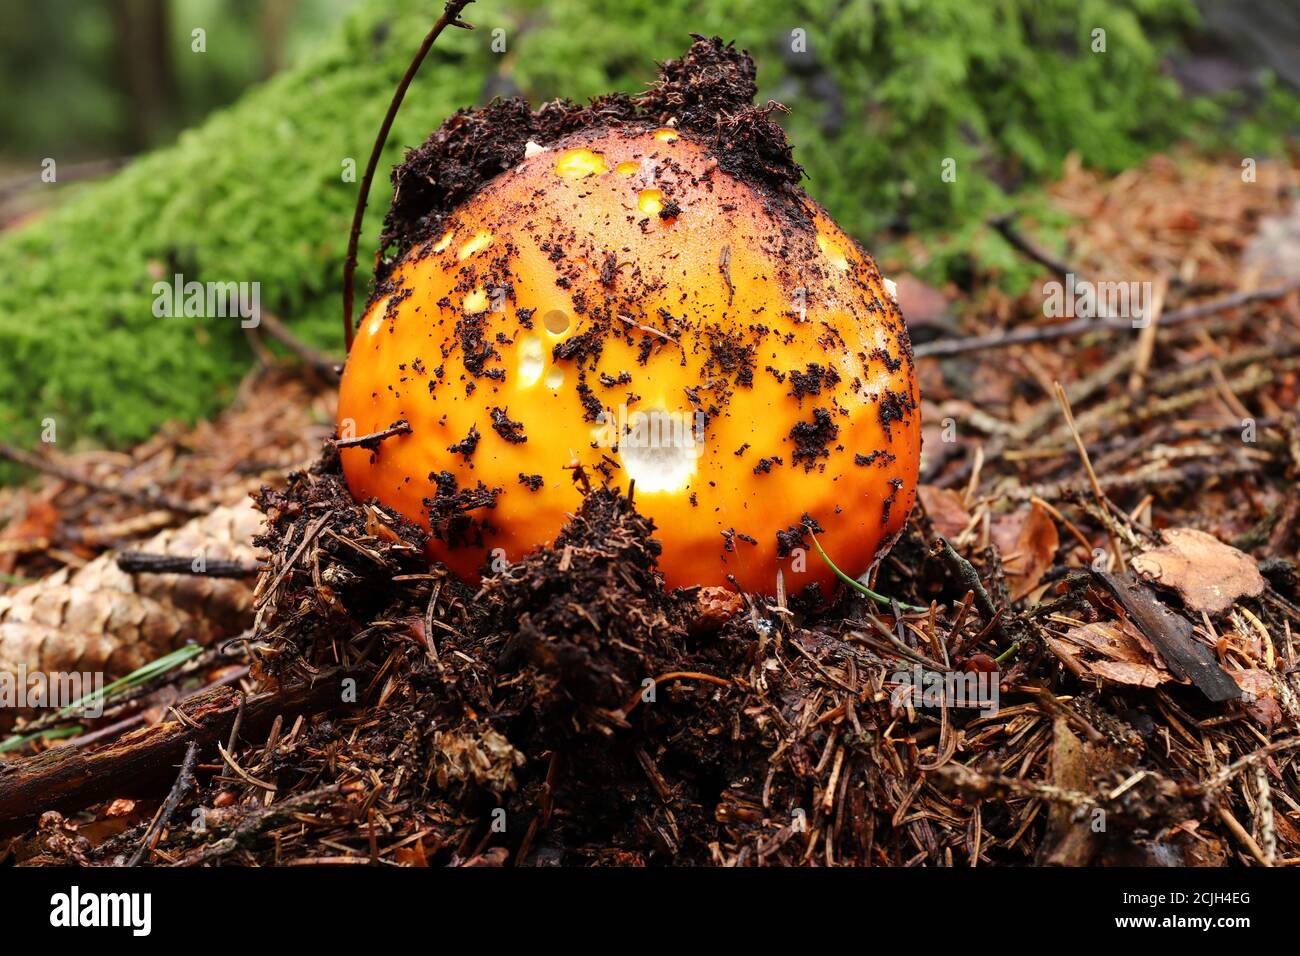 Detalle del Creciente Rojo toadstool - Amanita muscaria Foto de stock